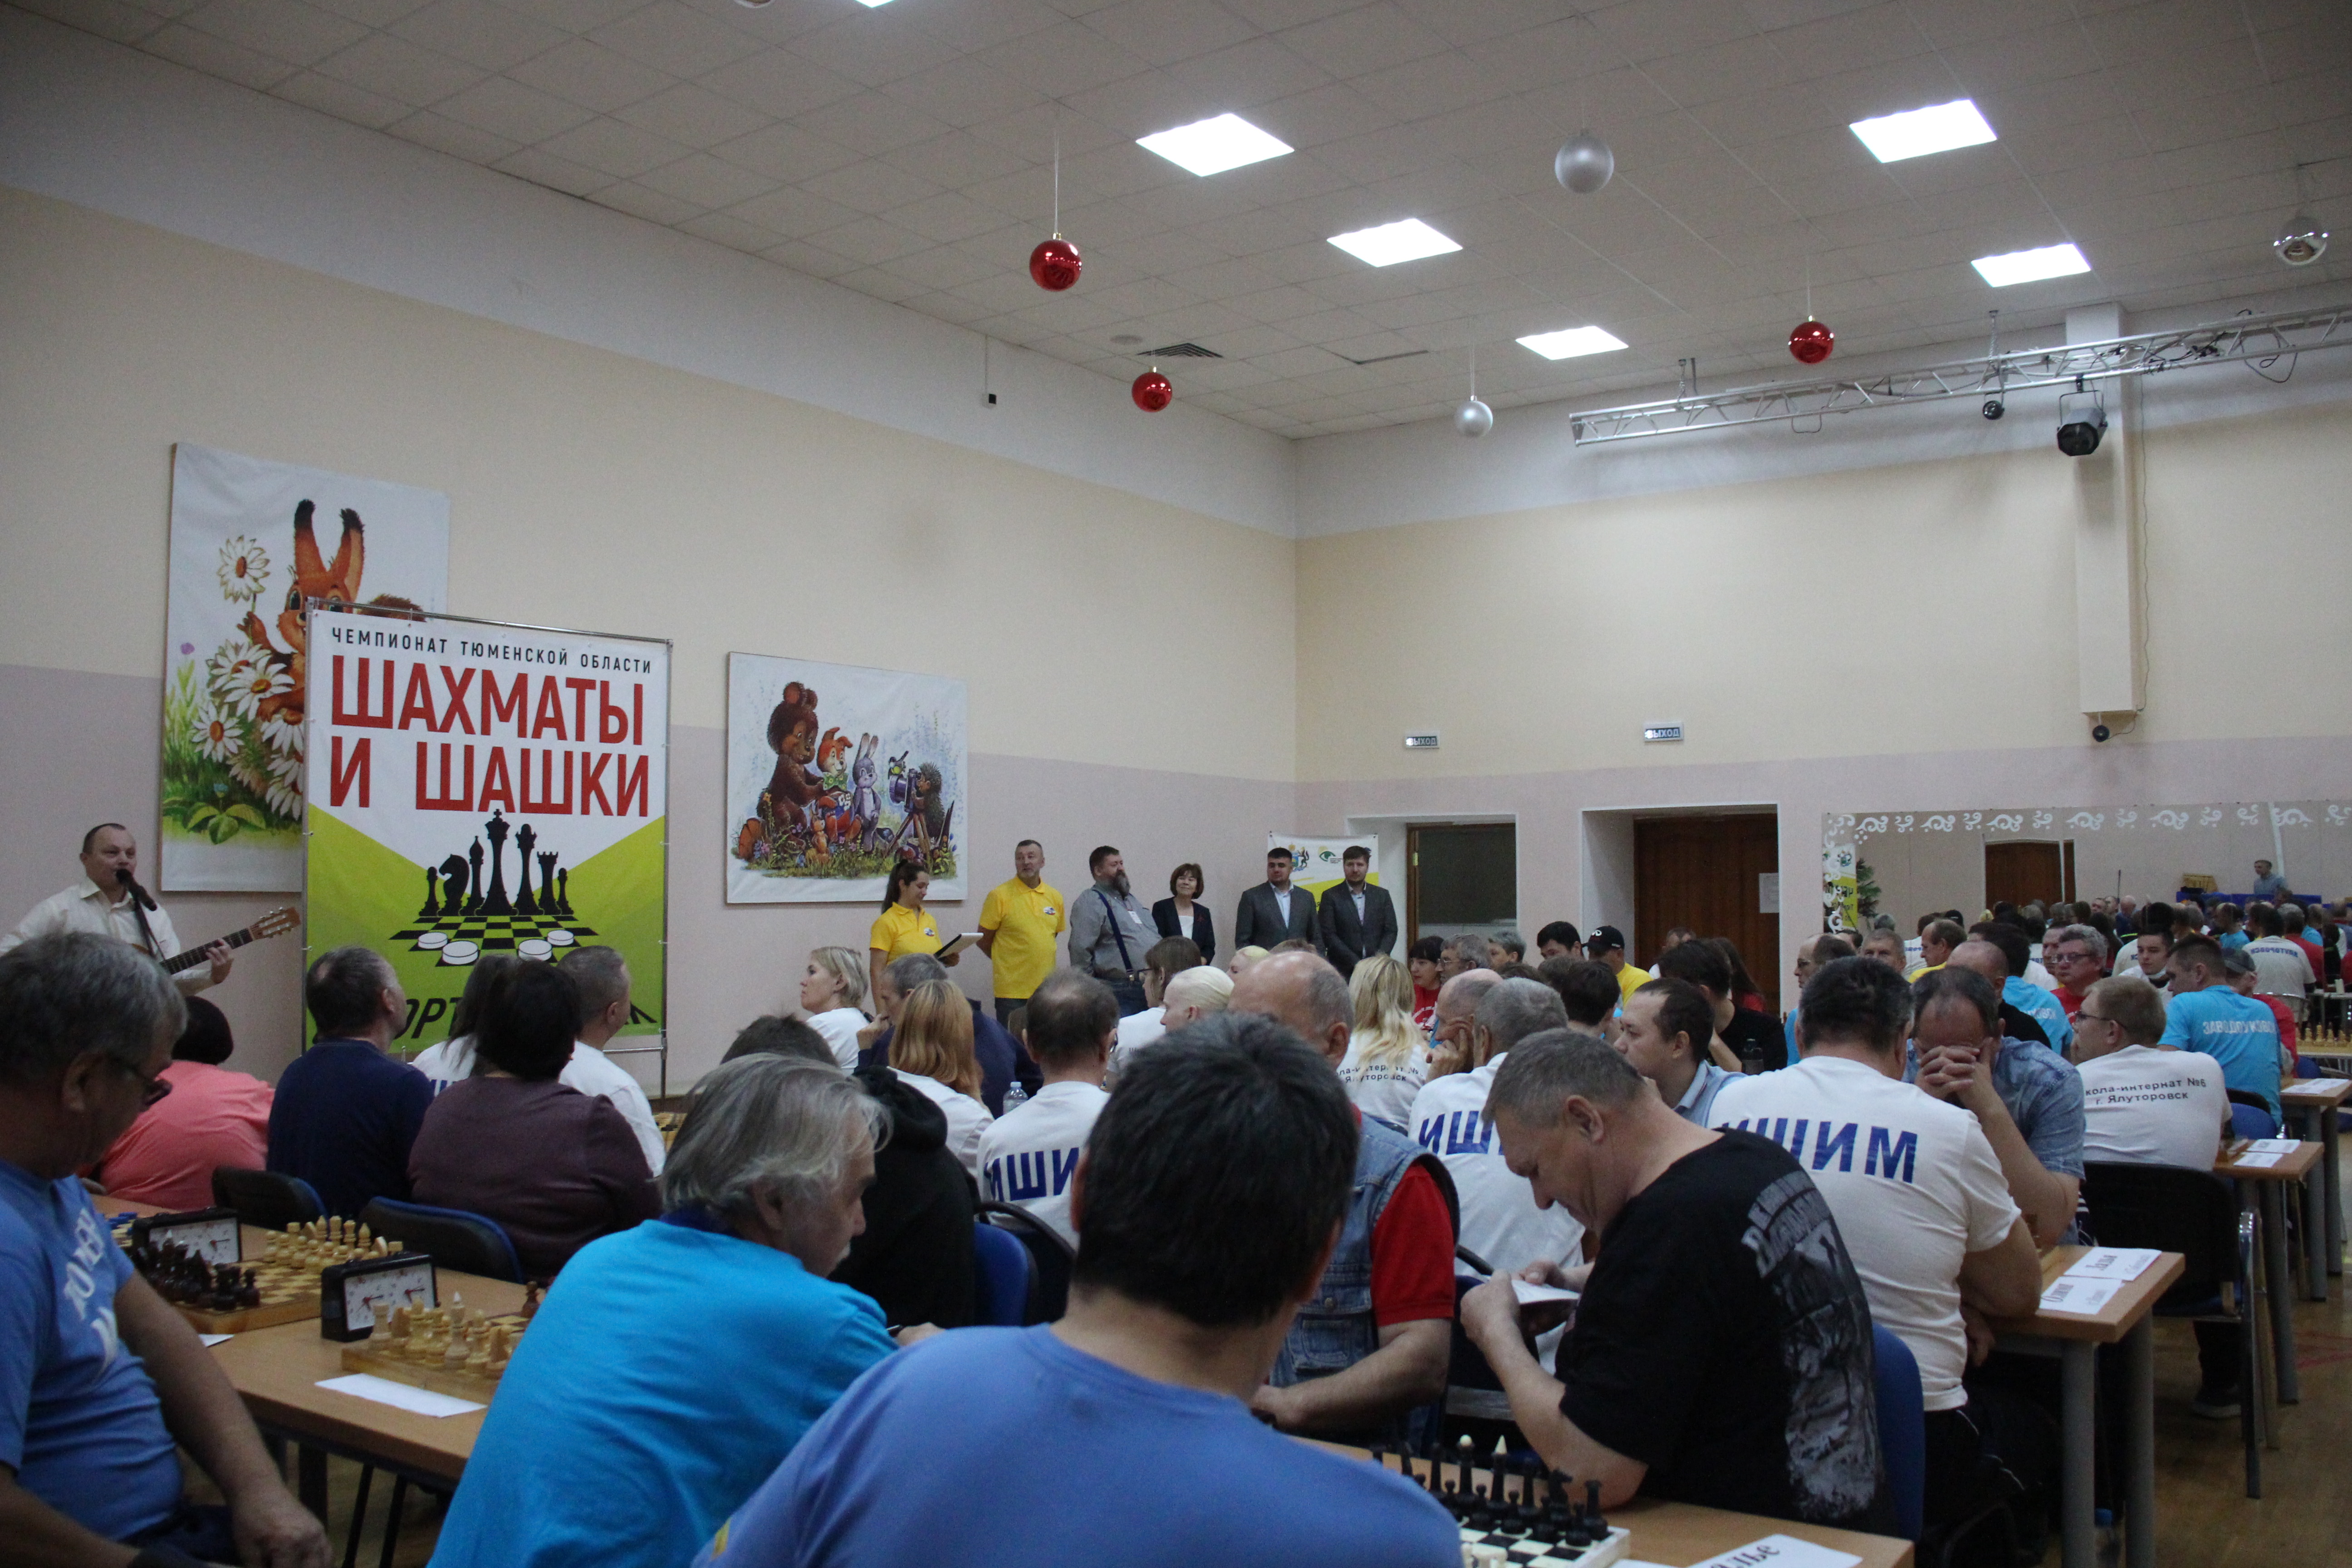 19 – 21 октября прошел Чемпионат Тюменской области по шахматам и шашкам среди спортсменов с ограниченными физическими возможностями (спорт слепых).